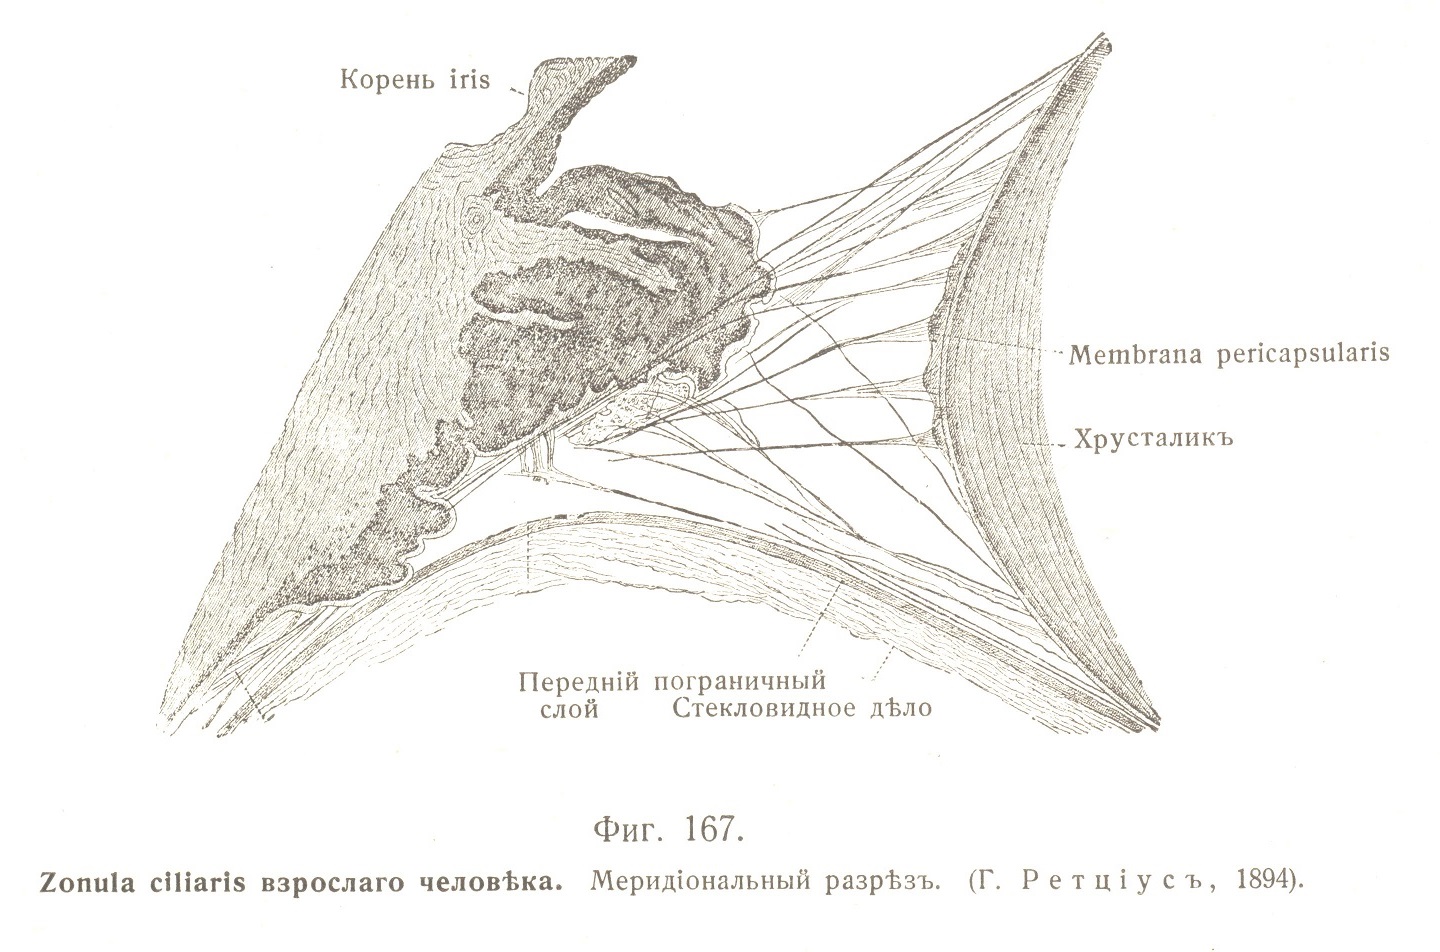 Zonula ciliaris взрослаго человѣка. Меридіональный разрѣзъ. 